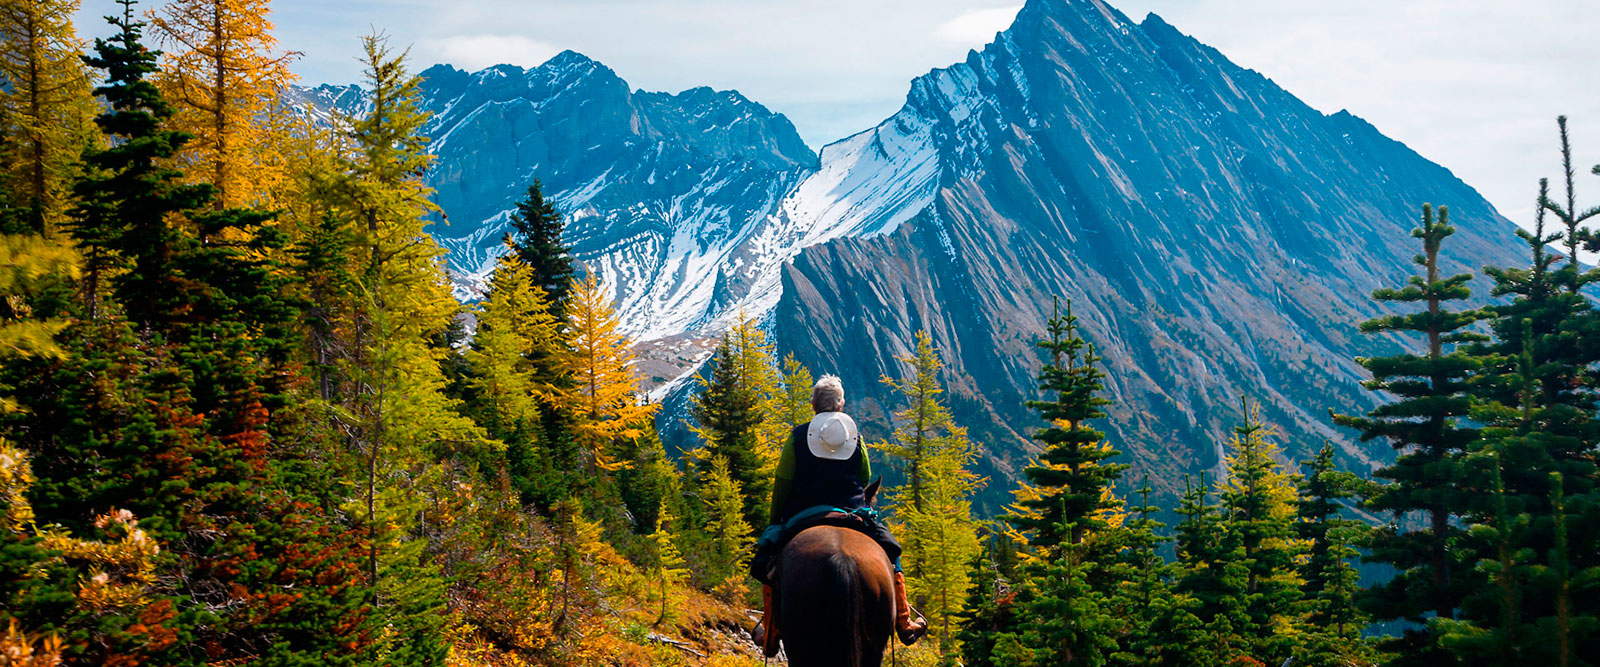 Montar a caballo en el Parque Nacional Banff